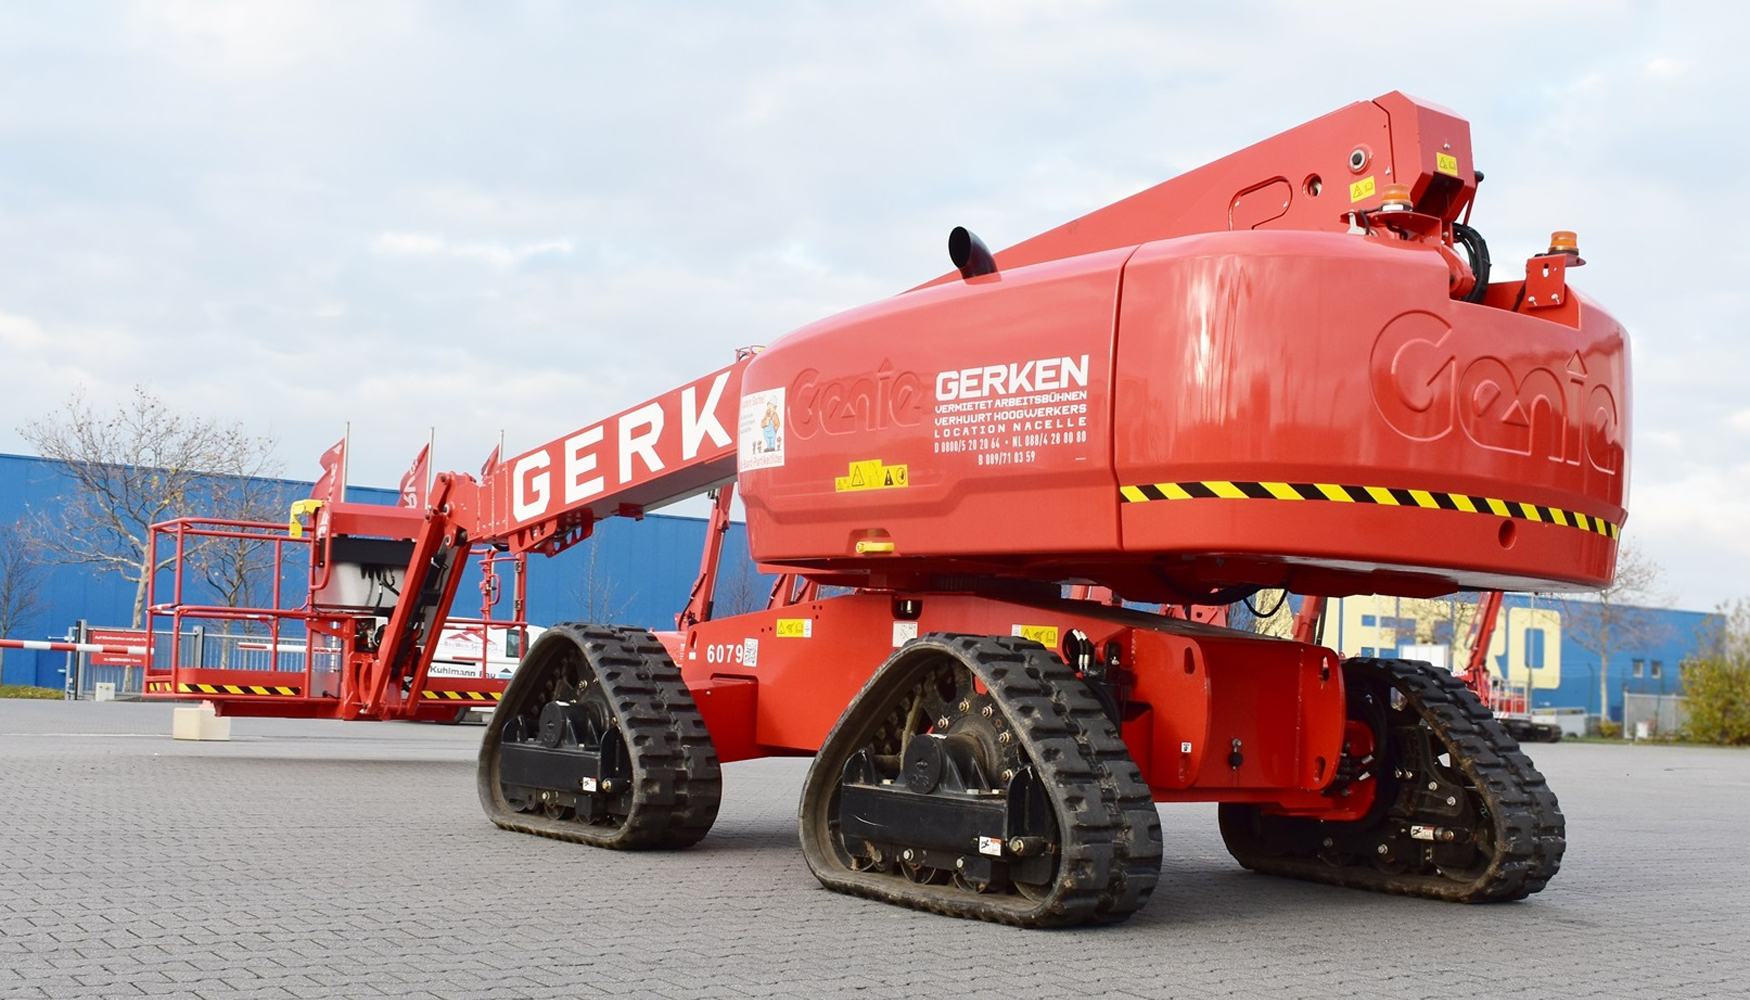 Nueva plataforma Genie S-65 TraX con capacidad XC, adquirida por Gerken